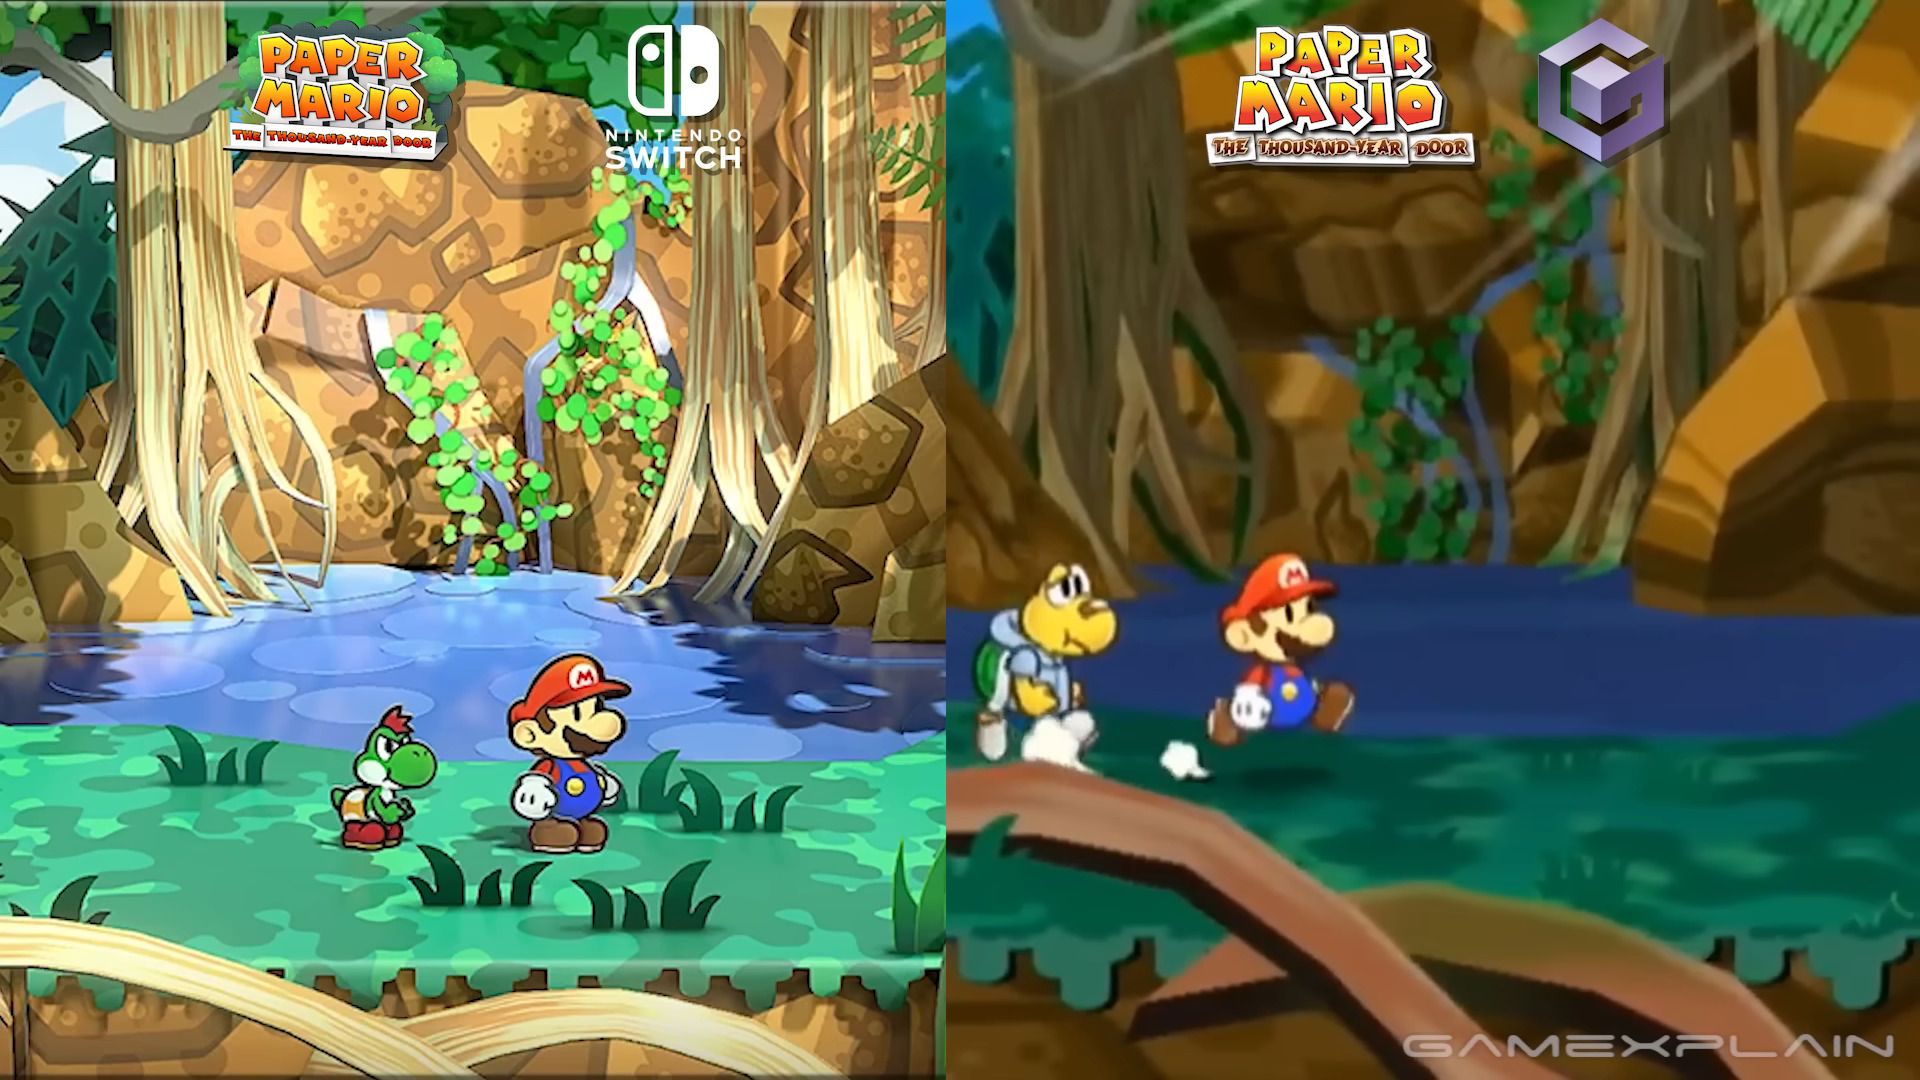 #Video zeigt Paper Mario für Switch im Direktvergleich mit der GameCube-Vorlage